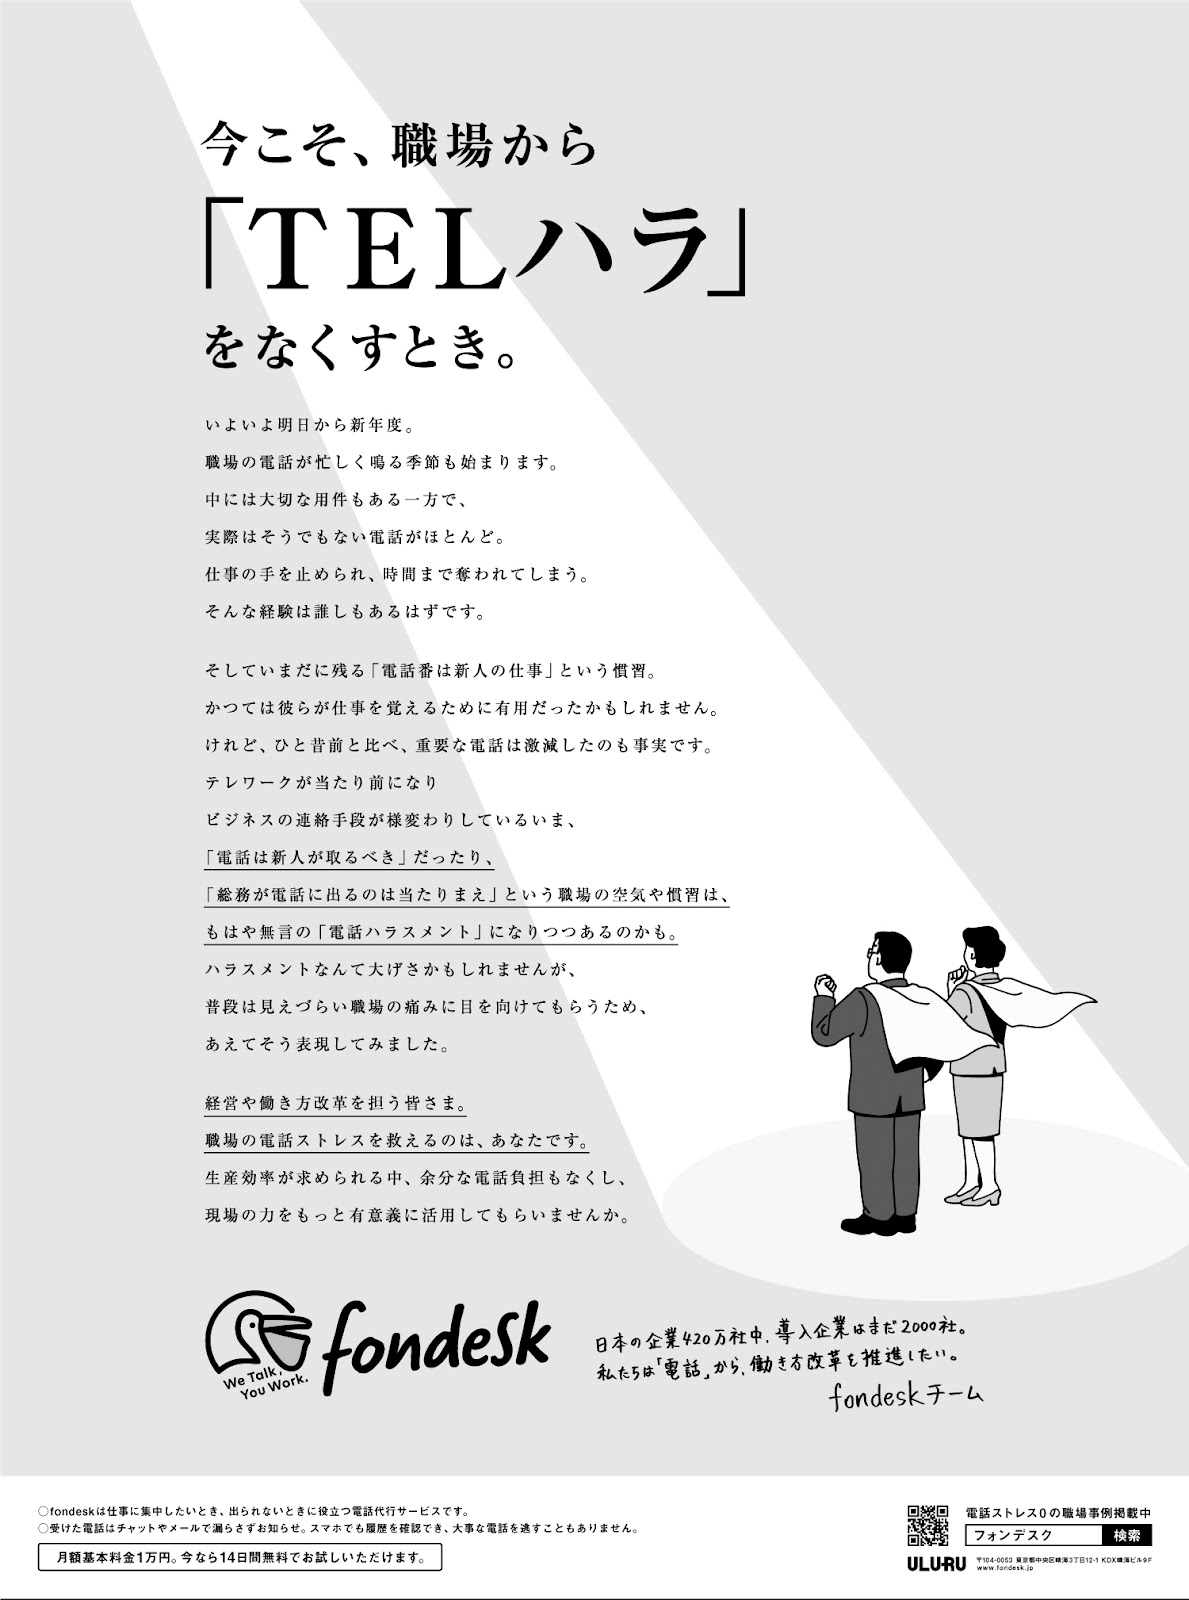 今こそ 職場から Telハラ をなくすとき Fondeskが変えていきたい 電話番 カルチャーと新聞広告に込めたメッセージ 前編 エードット ジャーナル